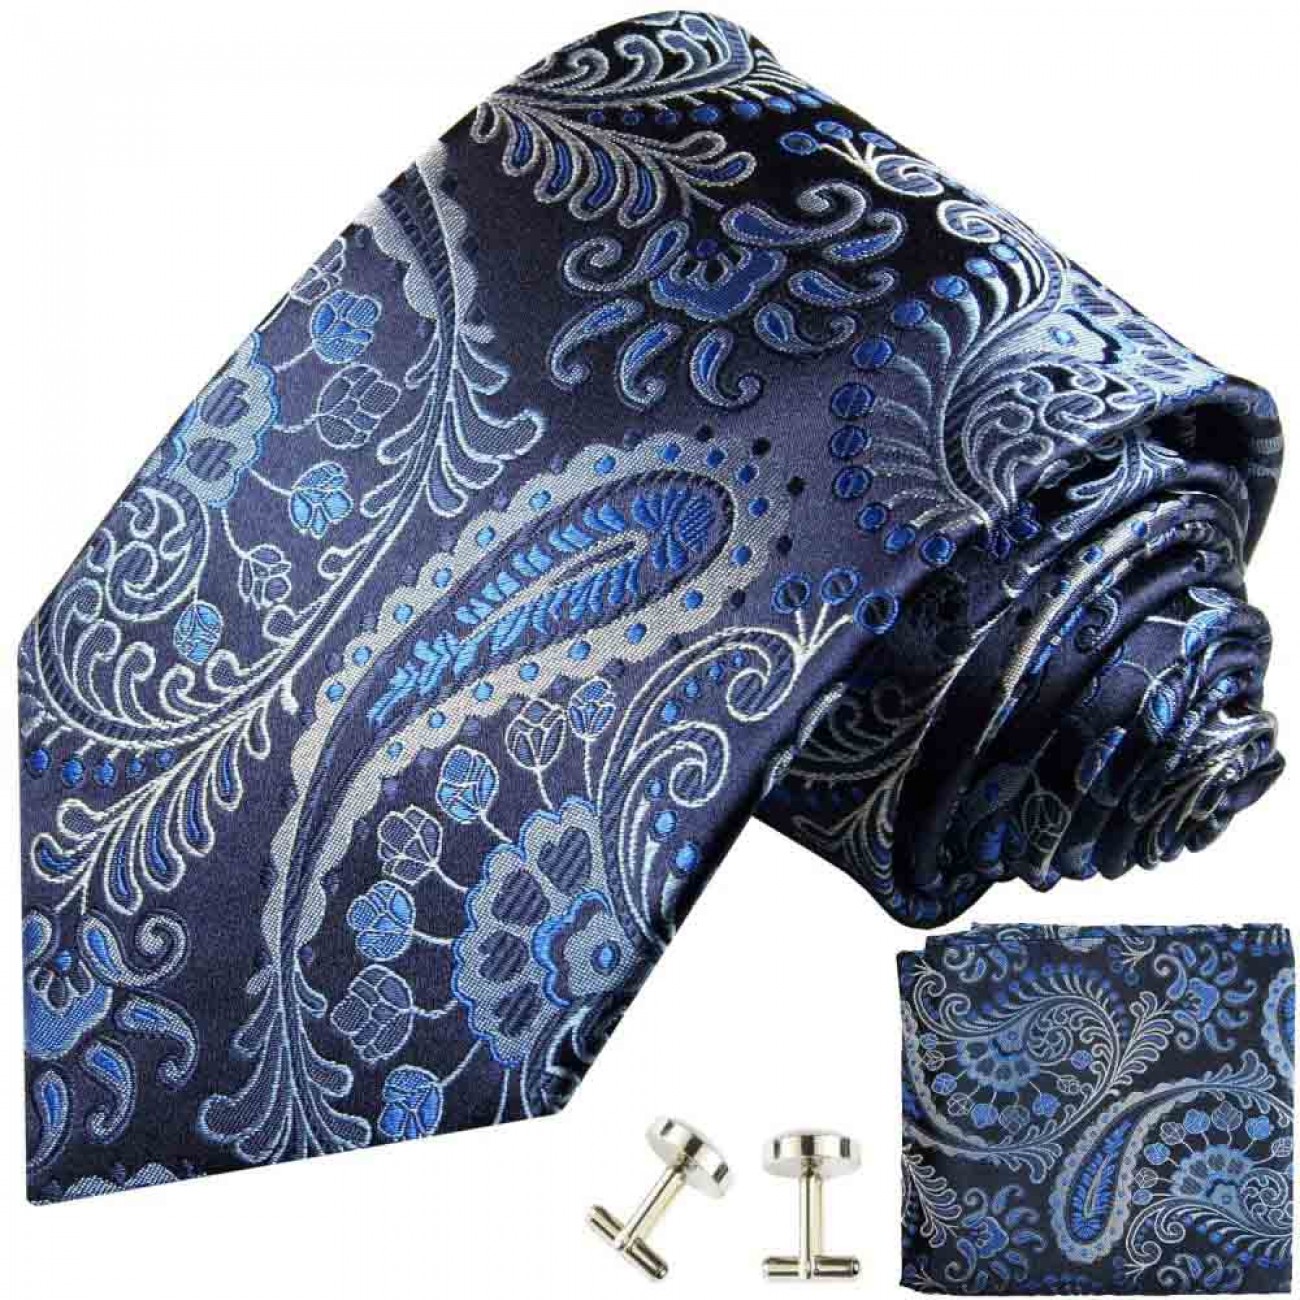 Schwarz blaues 551 Manschettenknöpfe + Shop Set Einstecktuch Seidenkrawatte Malone paisley 3tlg 100% Krawatten + Paul 